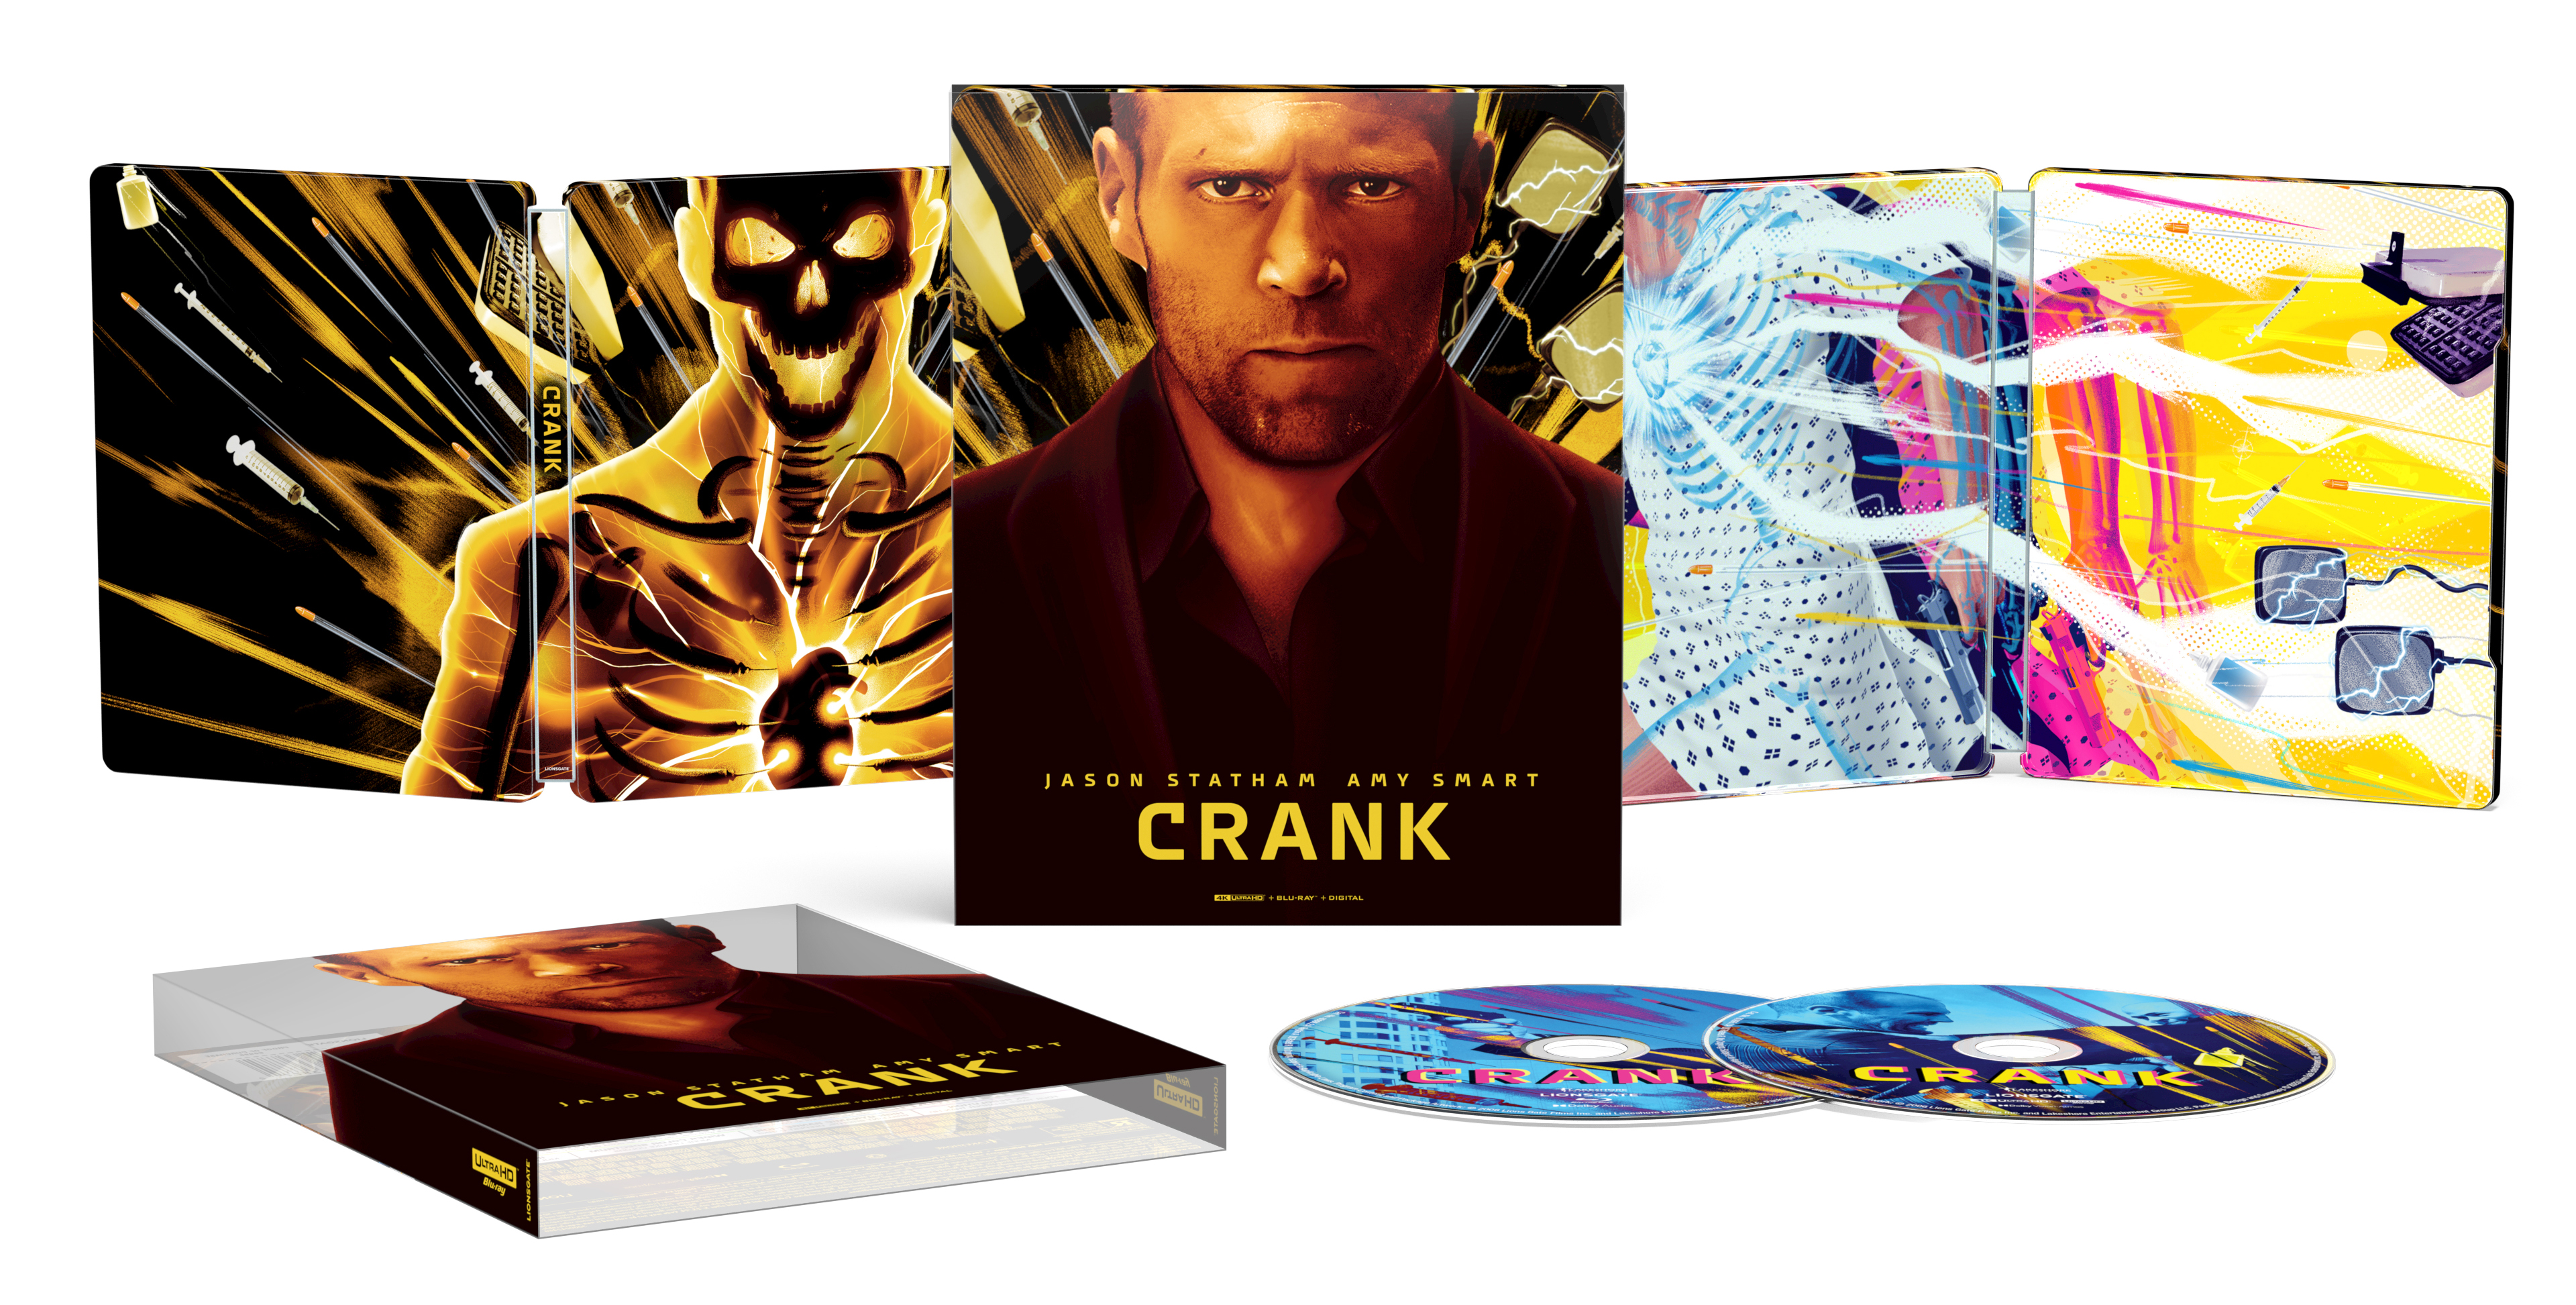 Crank [SteelBook] [4K Ultra HD Blu-ray/Blu-ray] [Only @ Best Buy] [2006] -  Best Buy